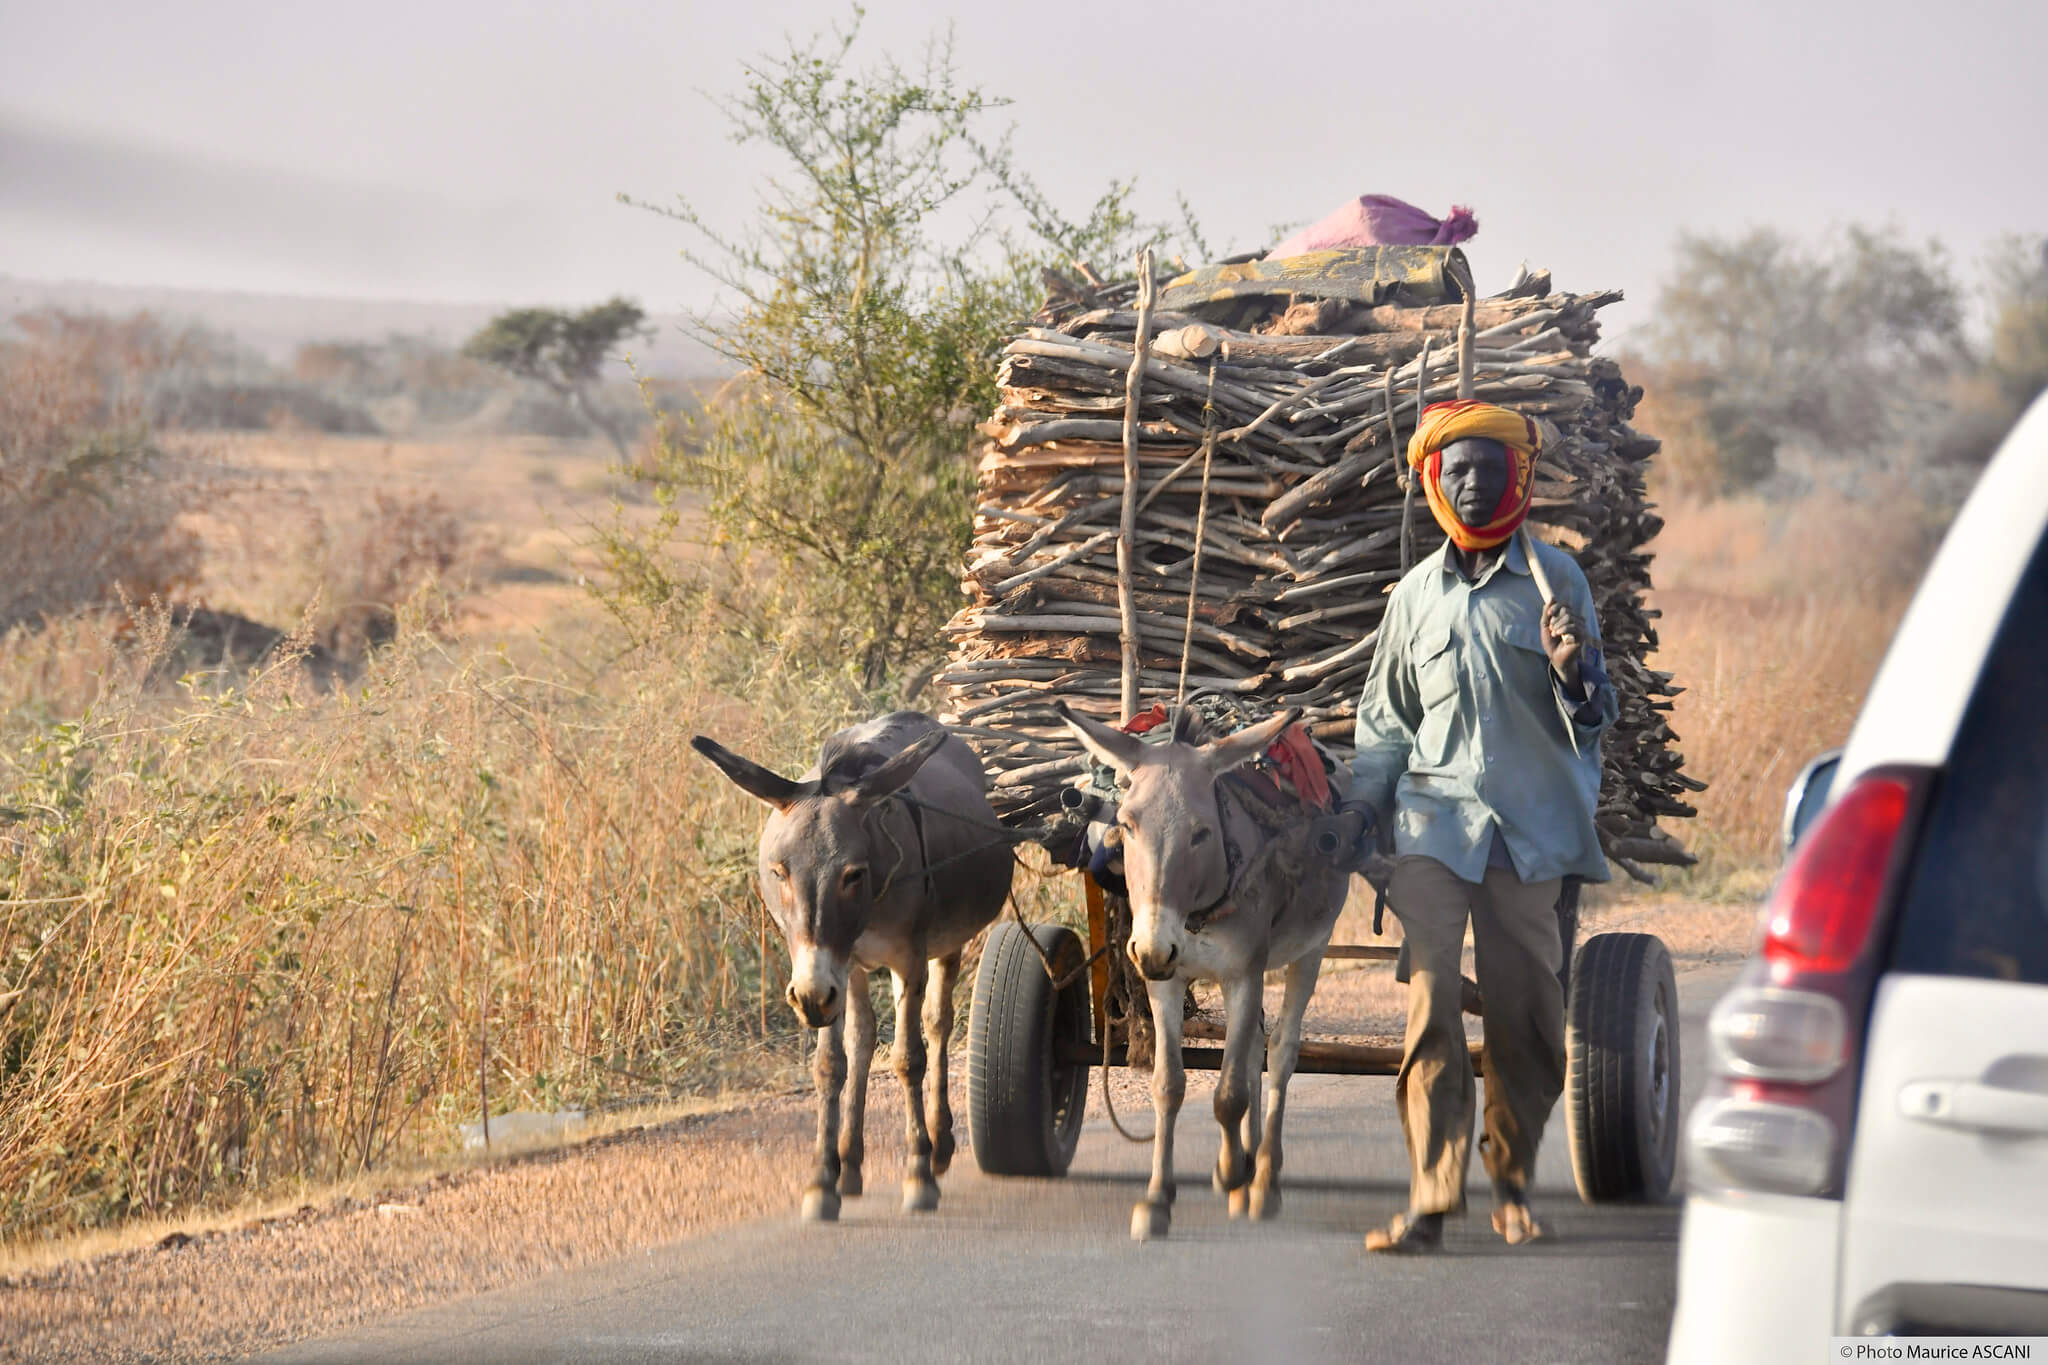 Kleinrensink-Niger, 2019. Het West-Afrikaanse land is een van de armste en minst ontwikkelde landen ter wereld. Ministerie van Buitenlandse Zaken